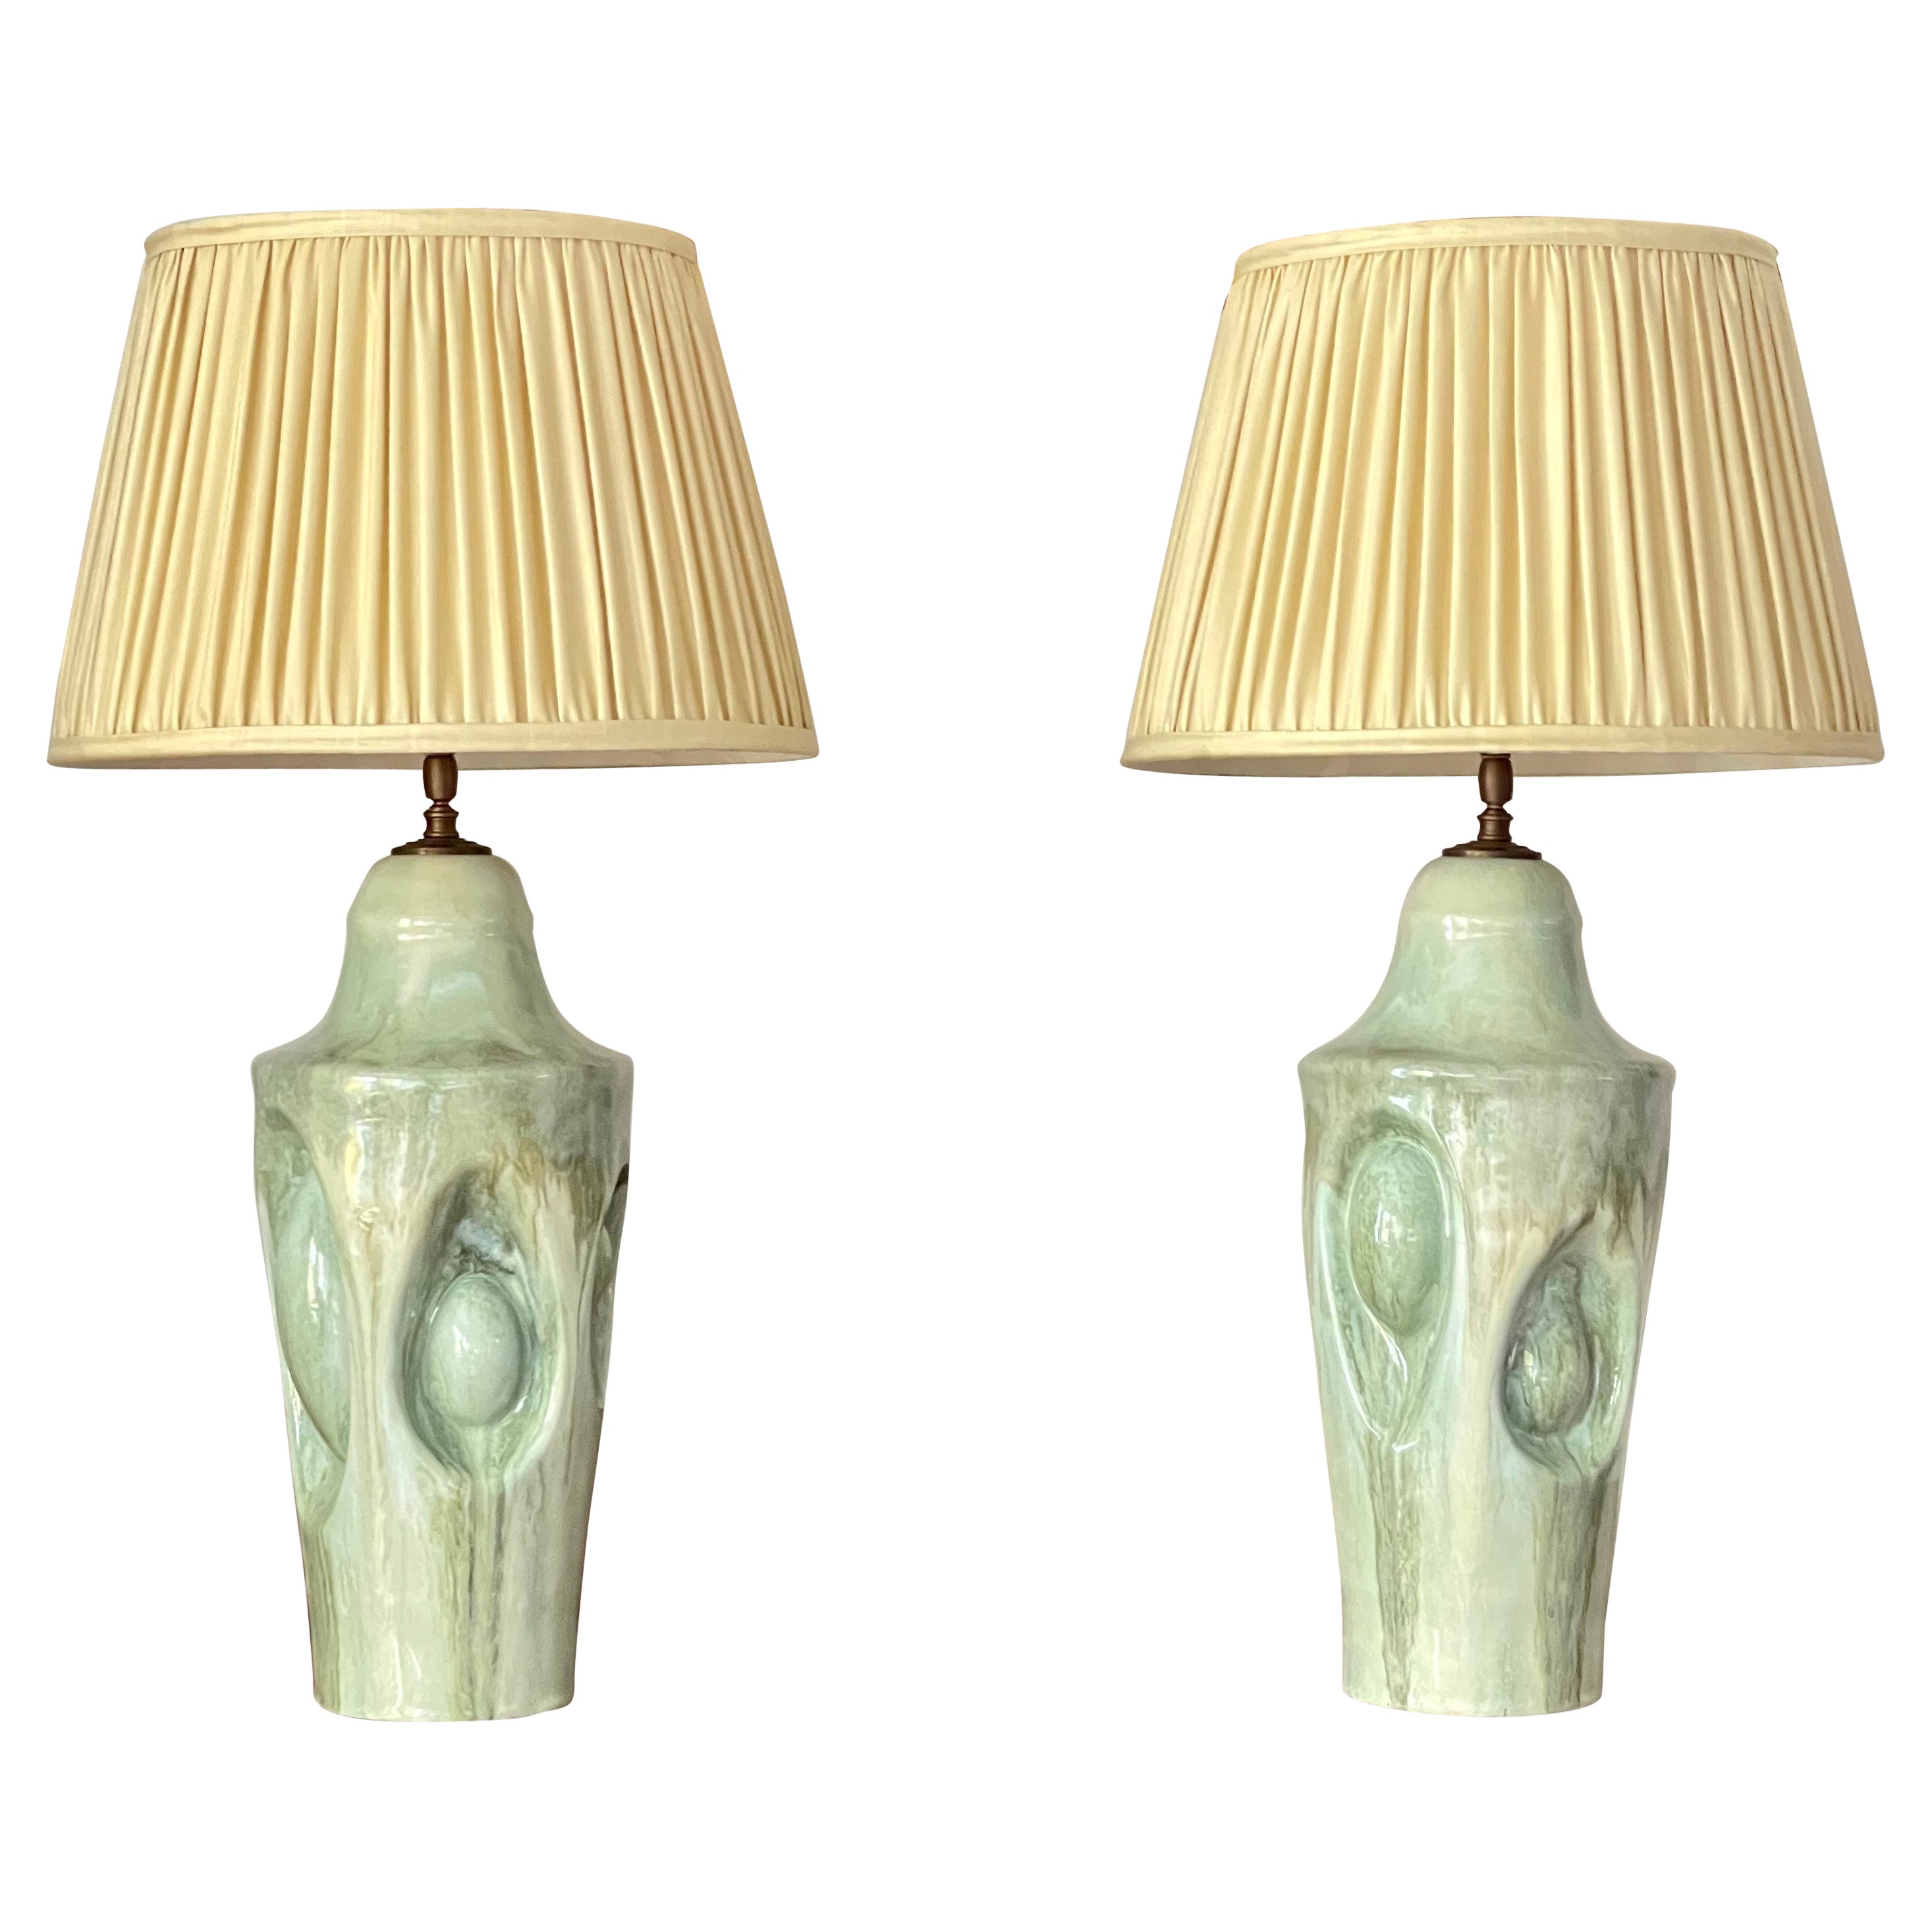 Pair of Table Lamps - Handmade Ceramic Unique Pieces Contemporary 21st Century